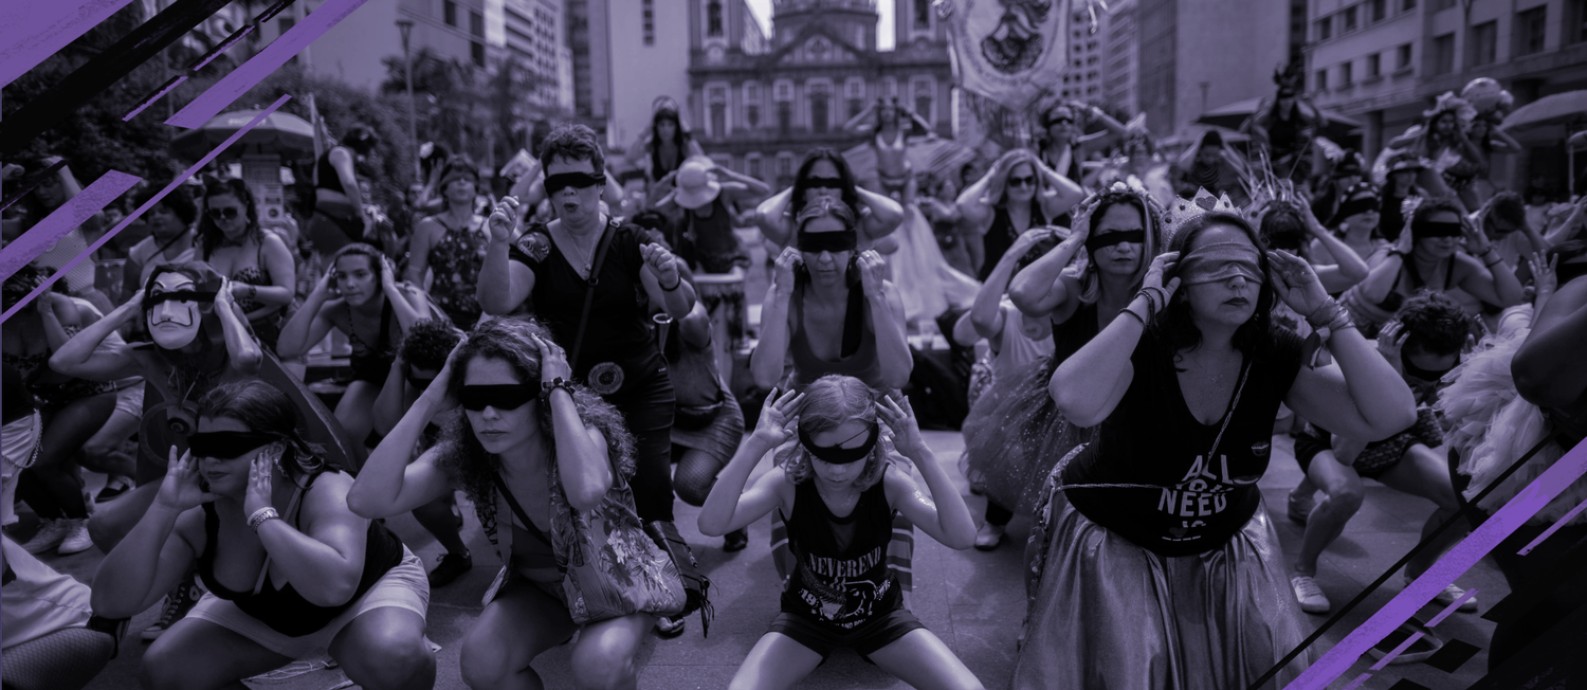 No Rio de Janeiro, o bloco Mulheres Rodadas reproduz coreografia inspirada no protesto feminista chileno que se espalhou pelo mundo. Foto: MAURO PIMENTEL / AFP